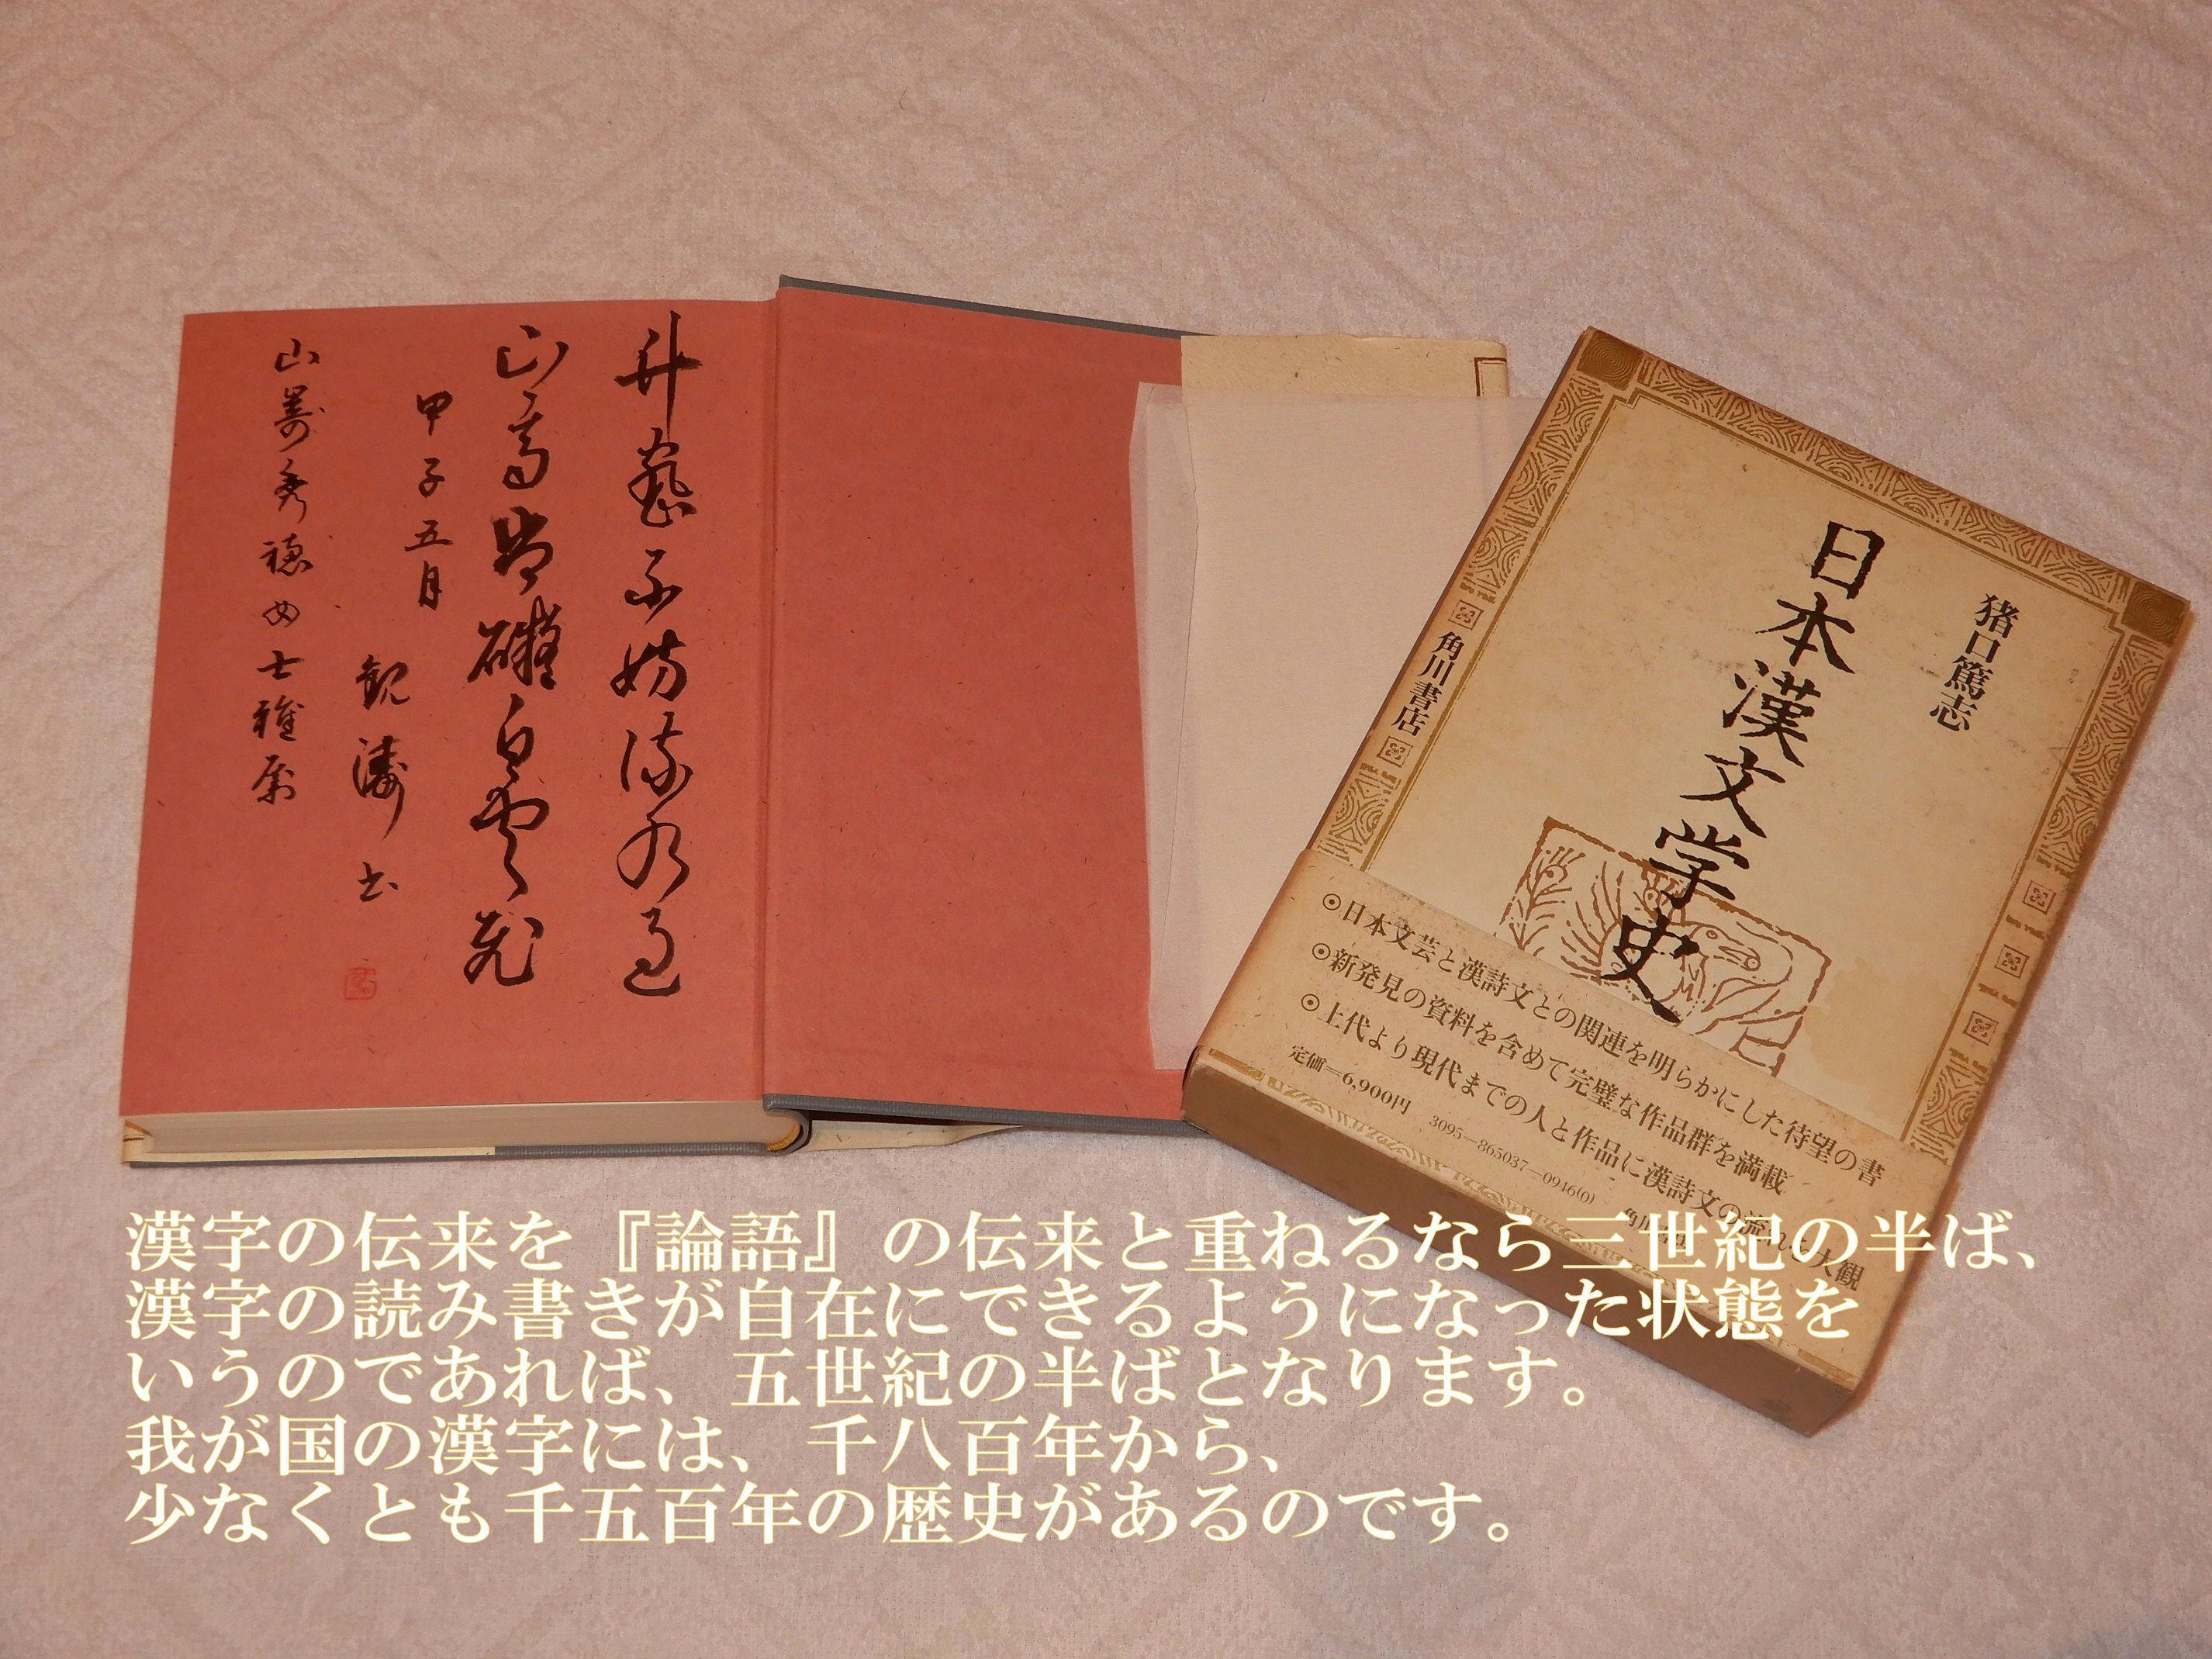 CAMPFIRE　漢字の話　キラキラネームの秘密』を出版したい　(キャンプファイヤー)